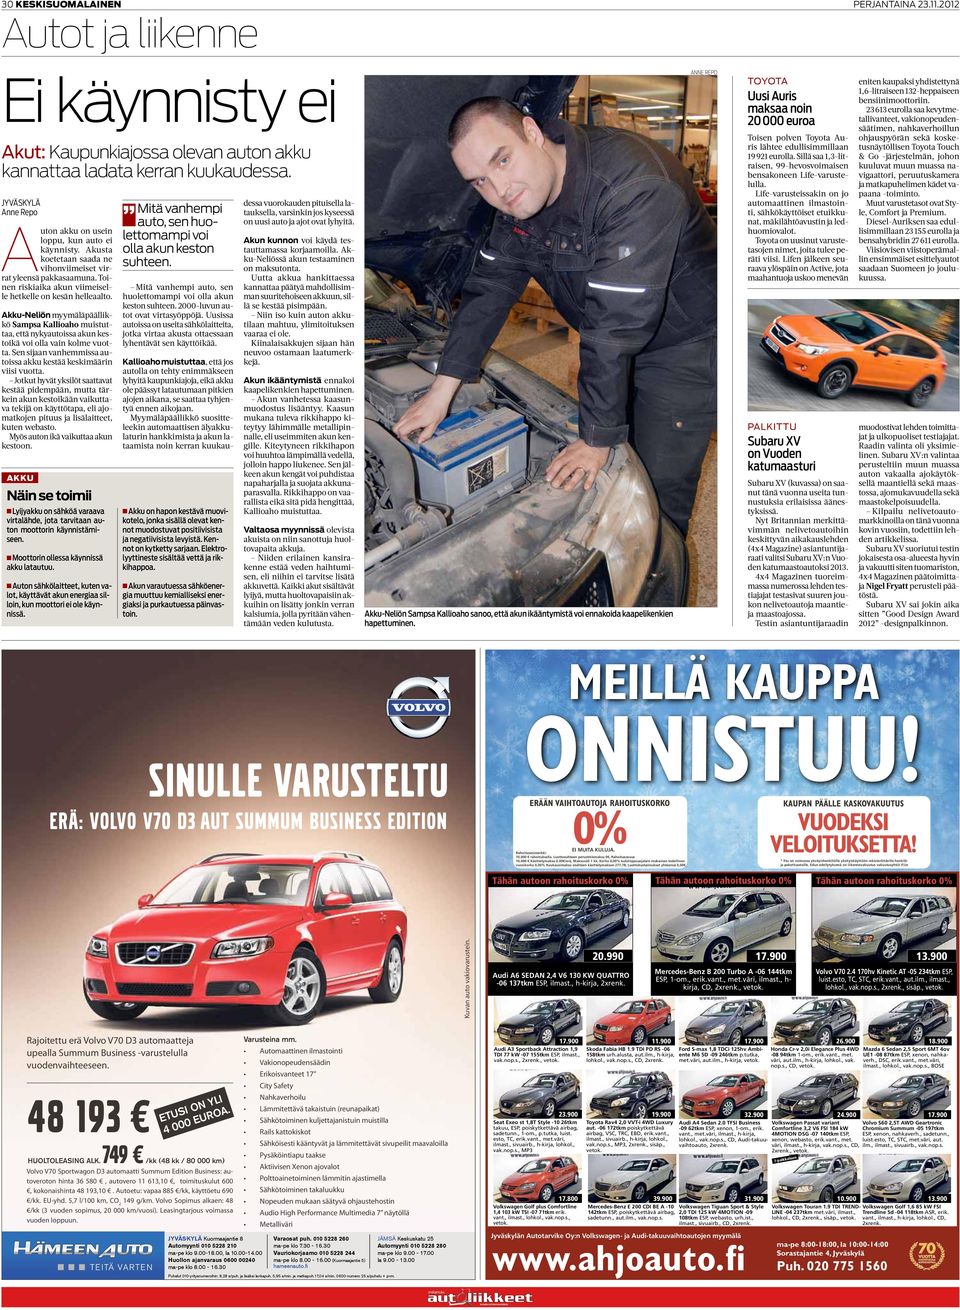 Akku-Neliön myymäläpäällikkö Sampsa Kallioaho muistuttaa, että nykyautoissa akun kestoikä voi olla vain kolme vuotta. Sen sijaan vanhemmissa autoissa akku kestää keskimäärin viisi vuotta.